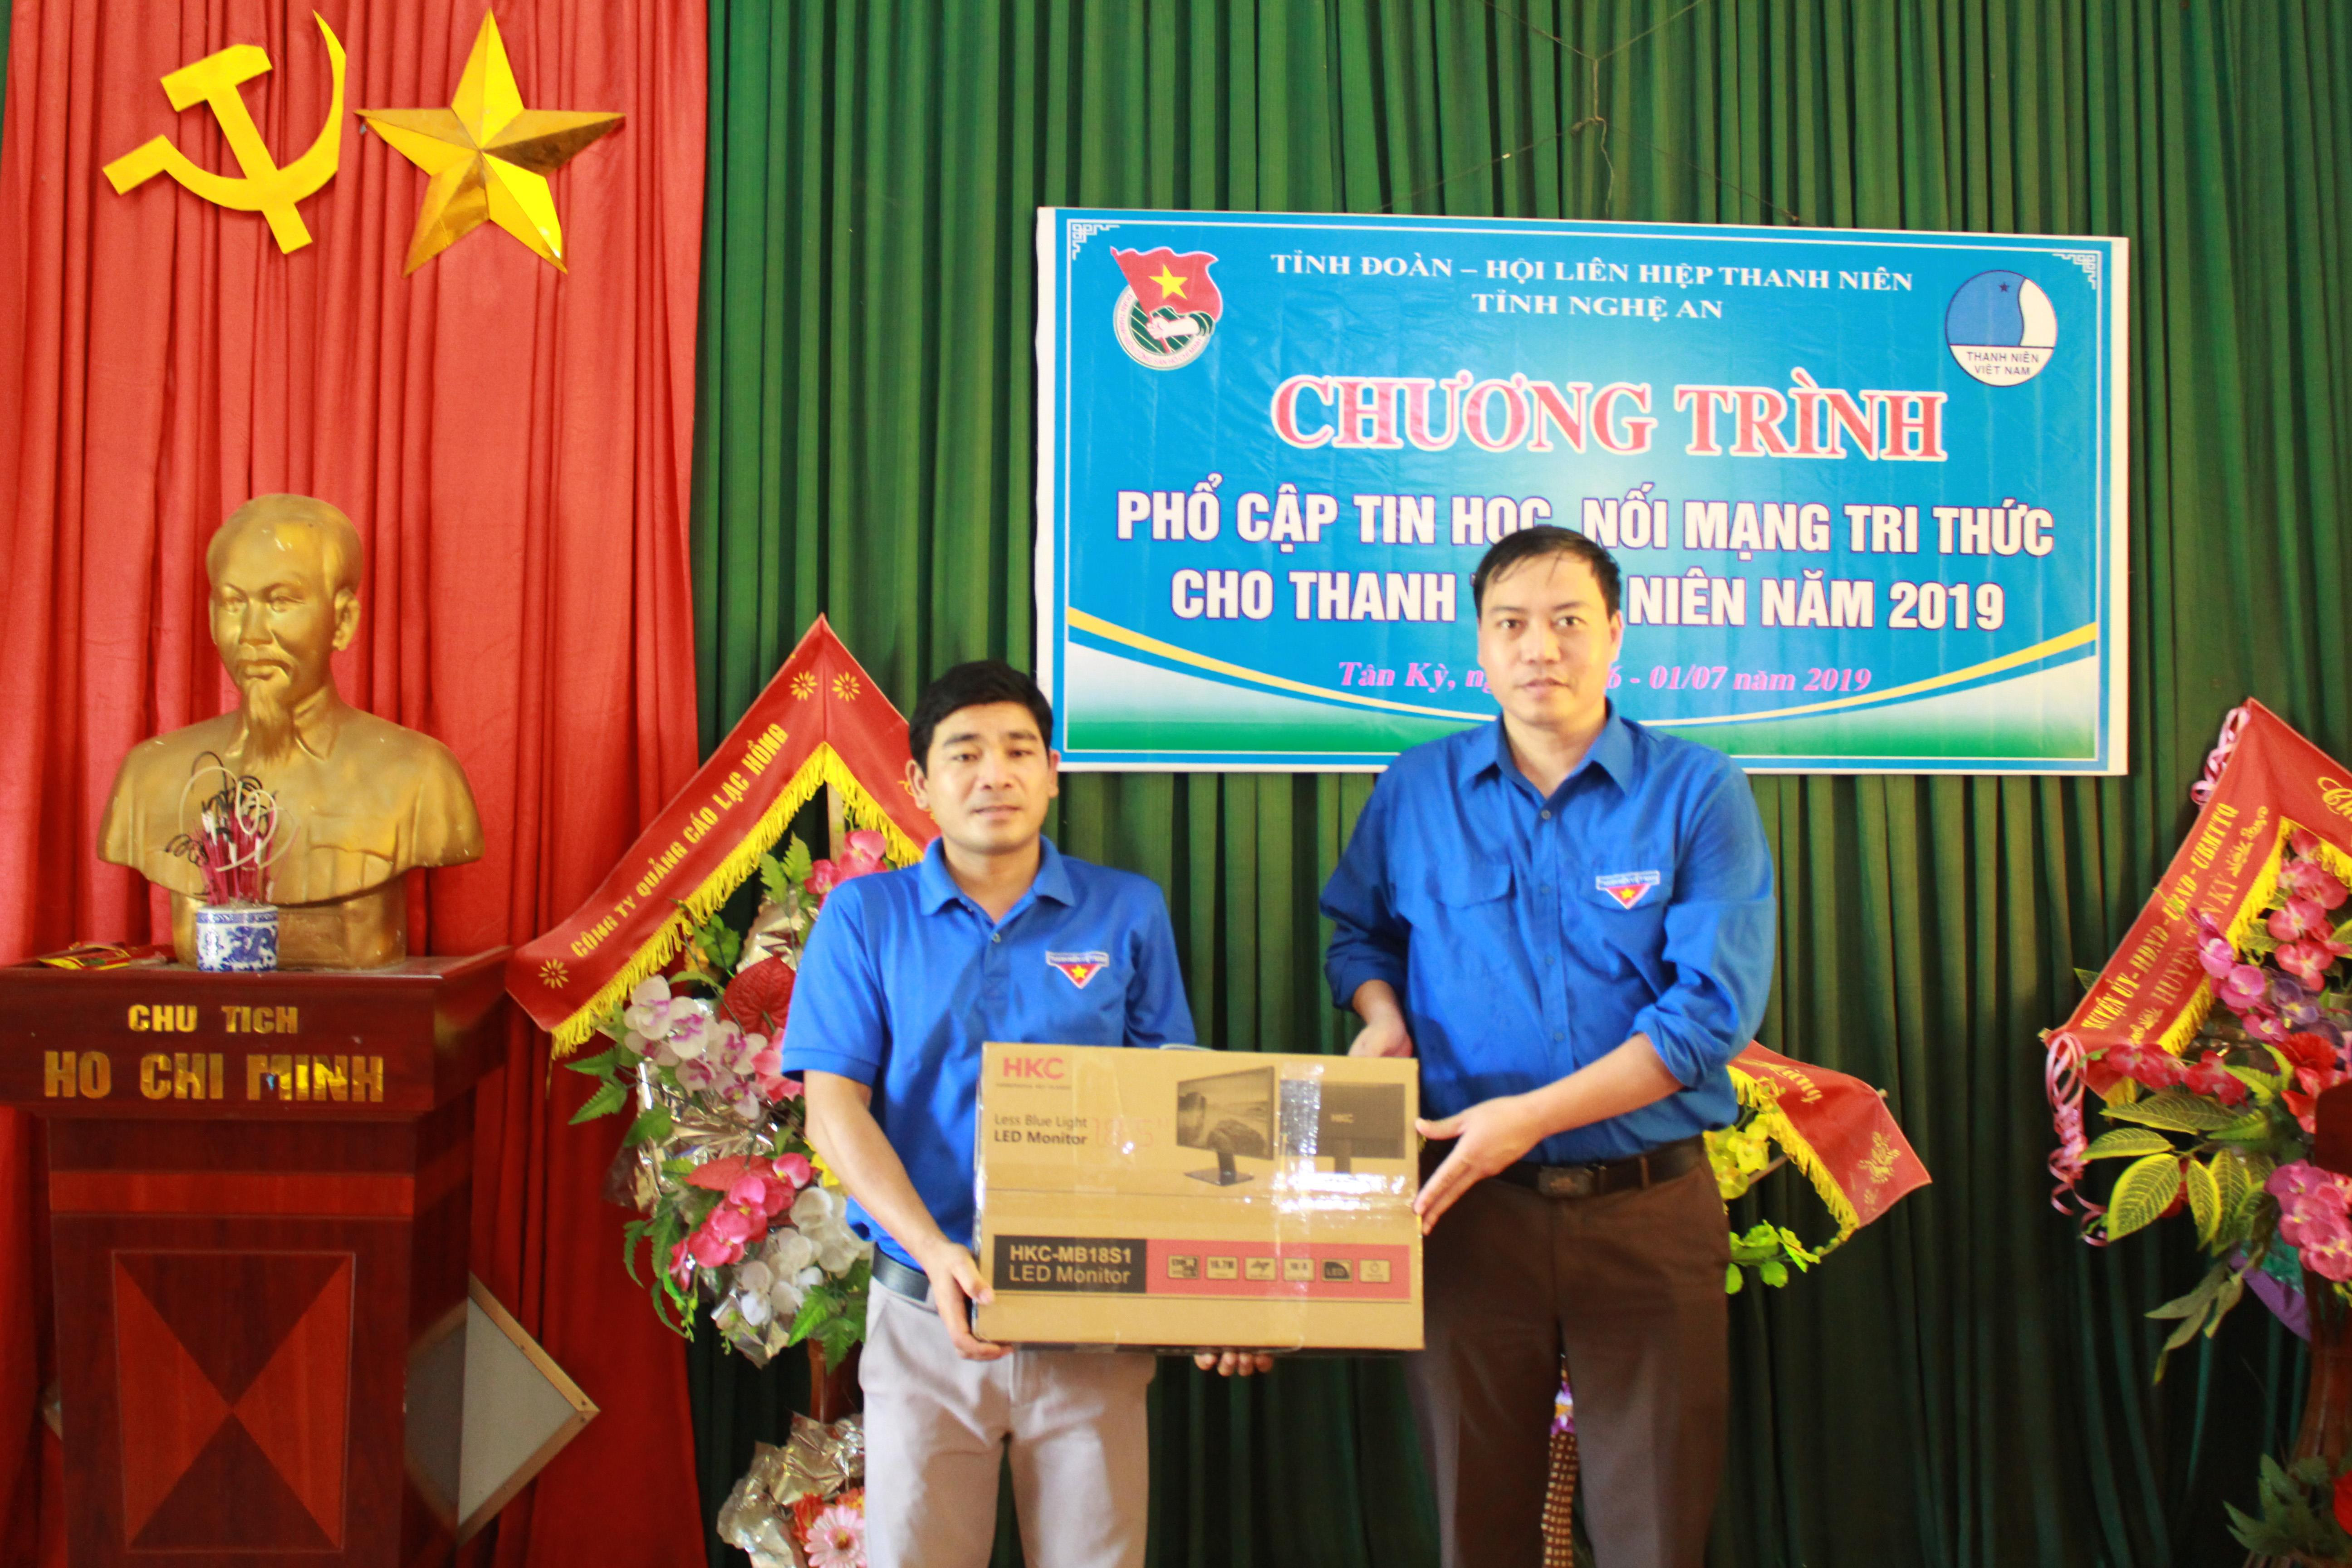 Dịp này, Tỉnh đoàn trao tặng 1 máy tính cho xã Tân Xuân, huyện Tân Kỳ. Ảnh: Phương Thúy